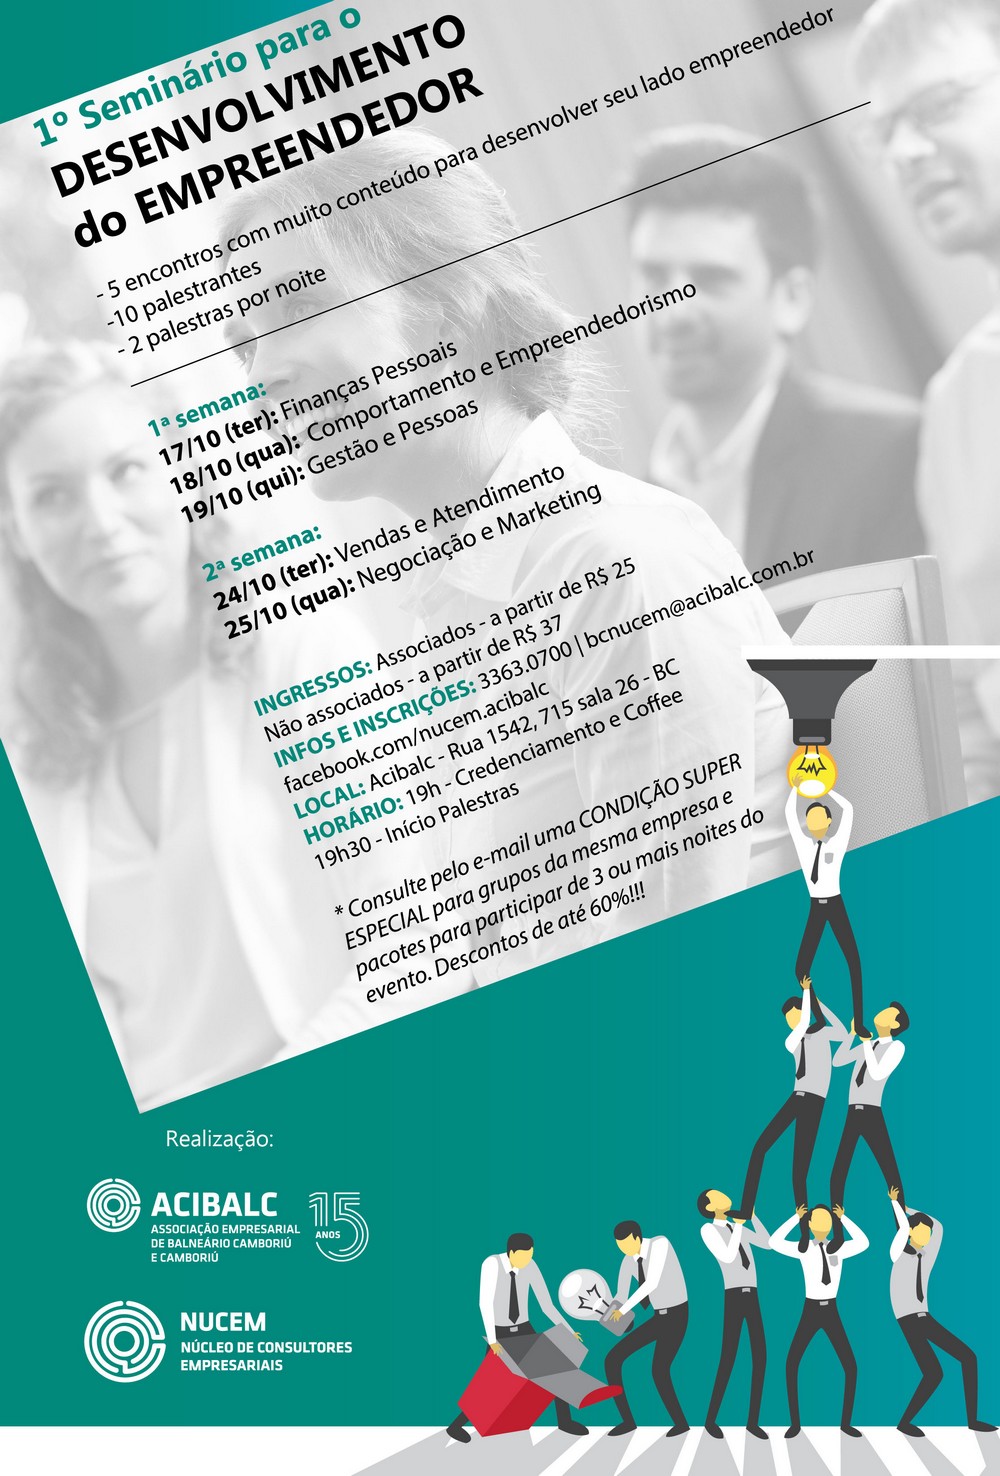 Acibalc promove 1º Seminário para o Desenvolvimento do Empreendedor em Balneário Camboriú